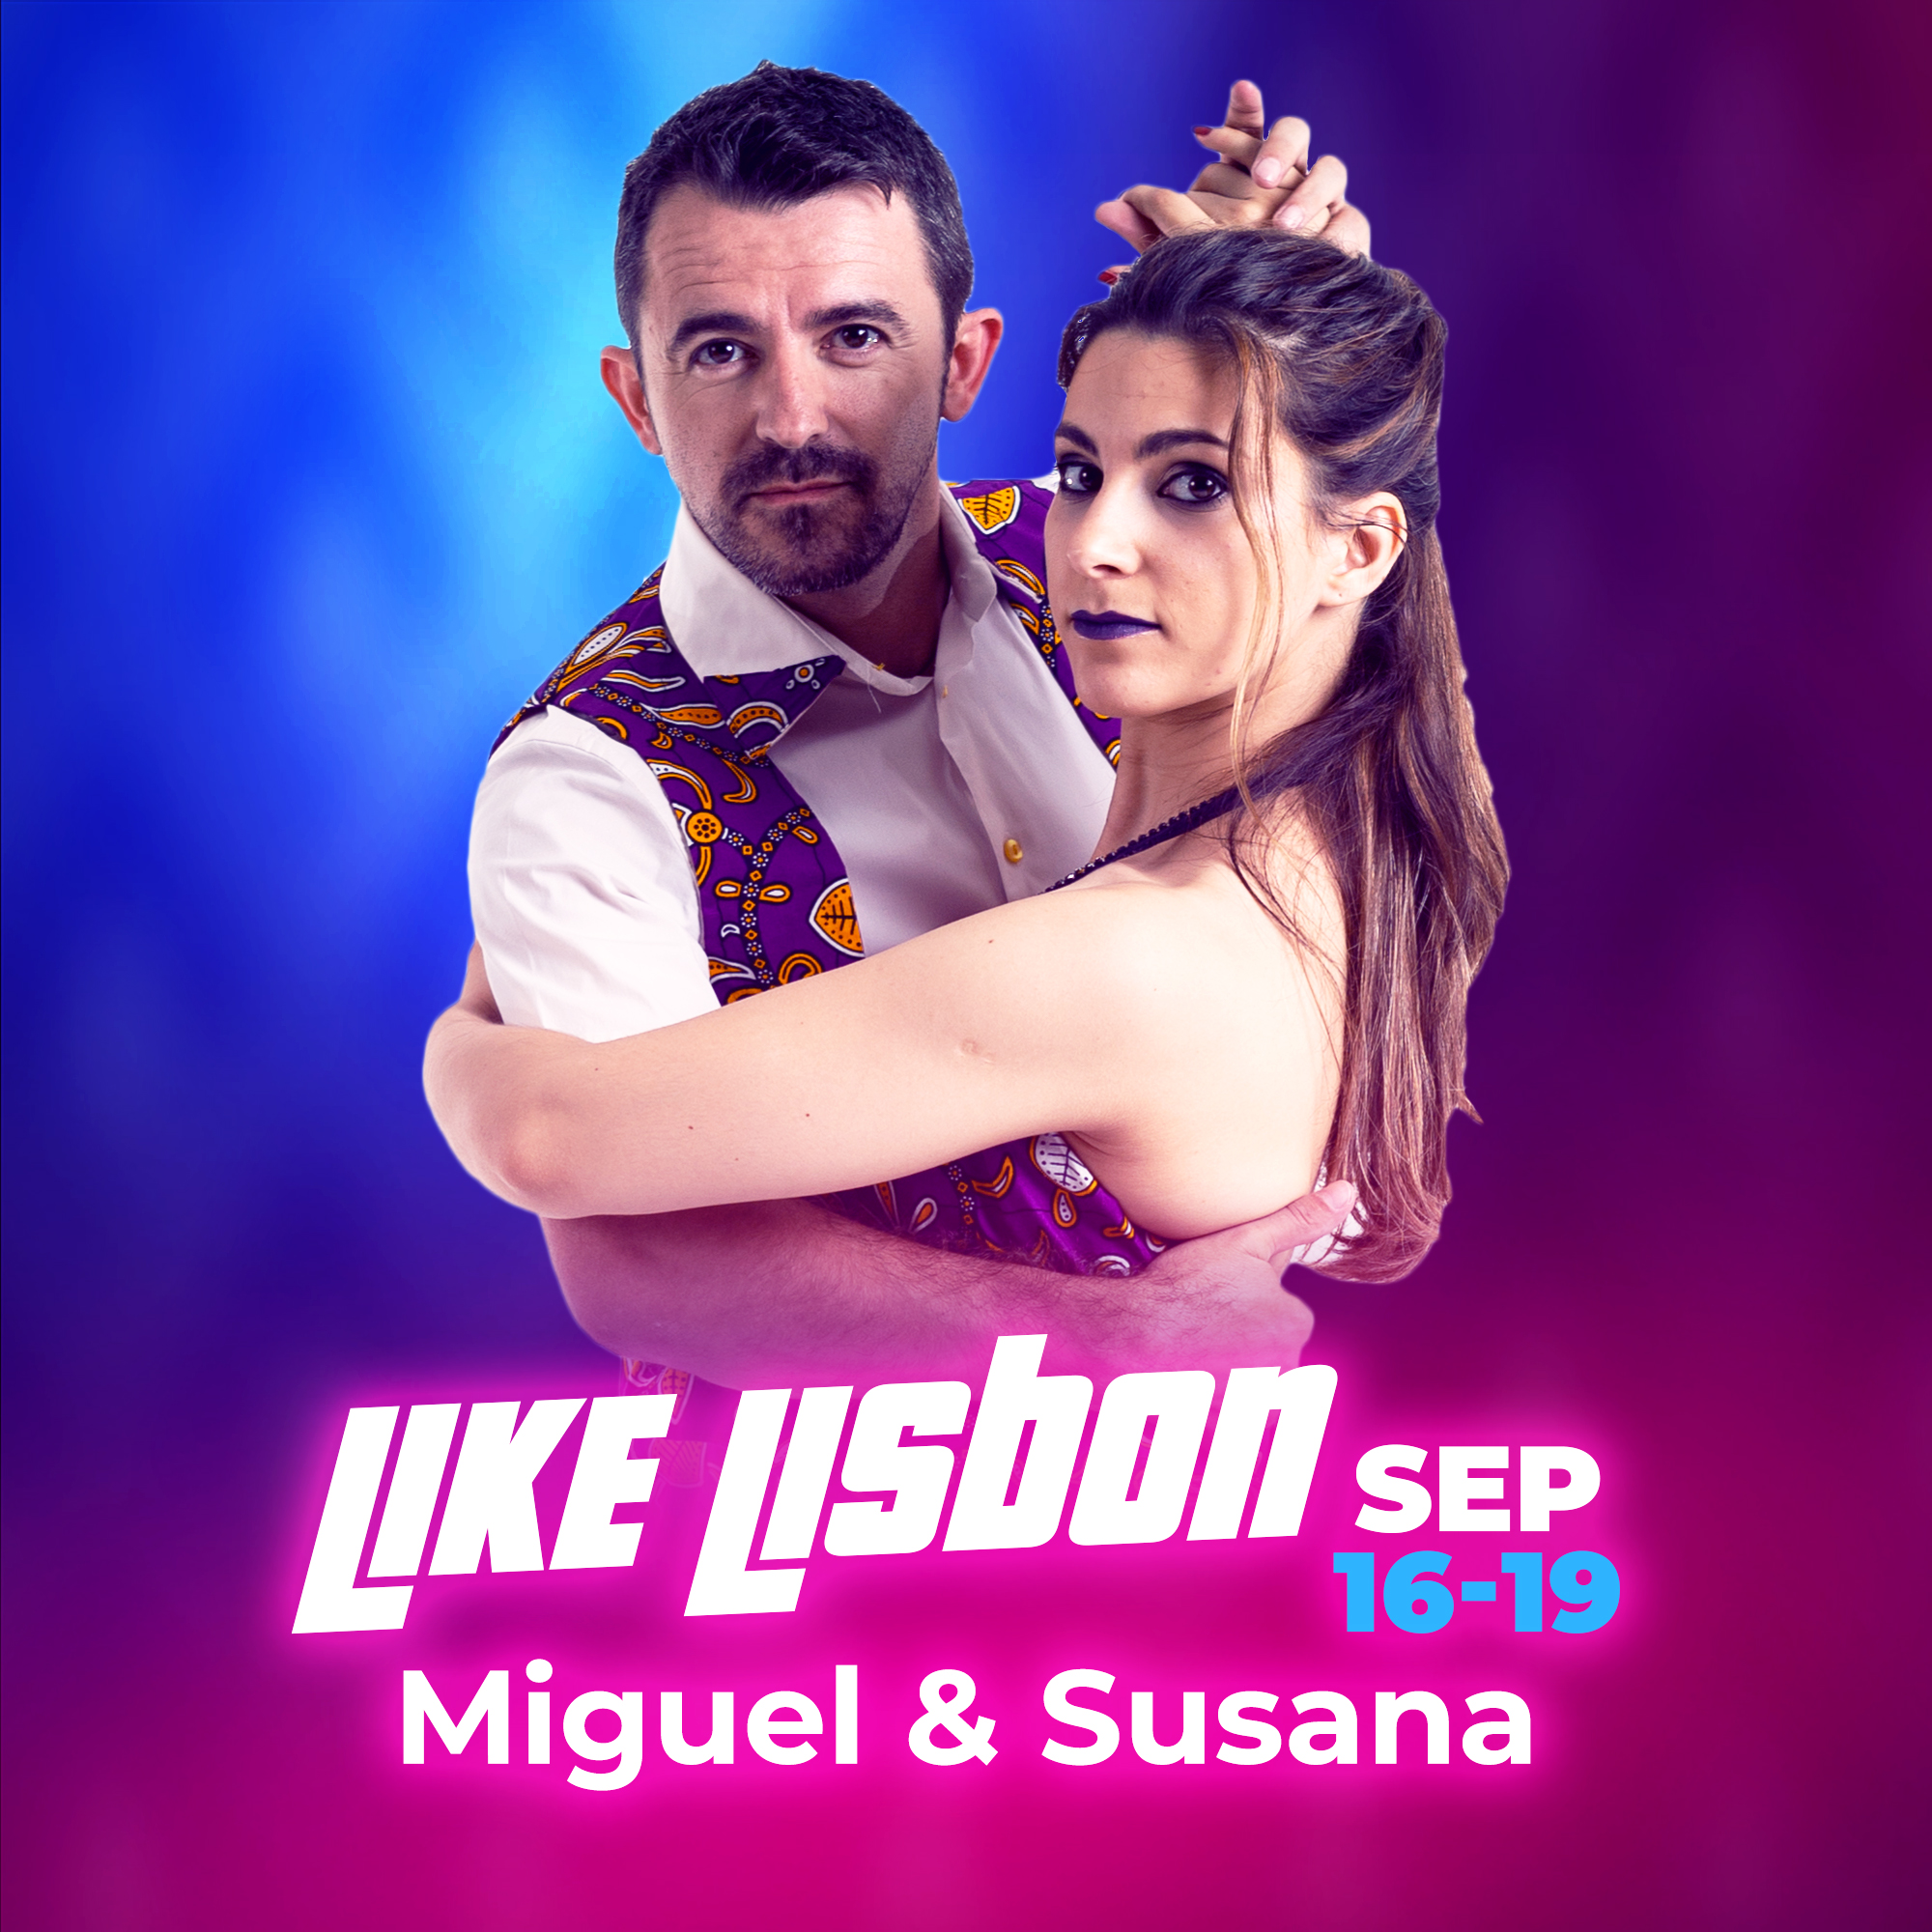 Miguel & Susana